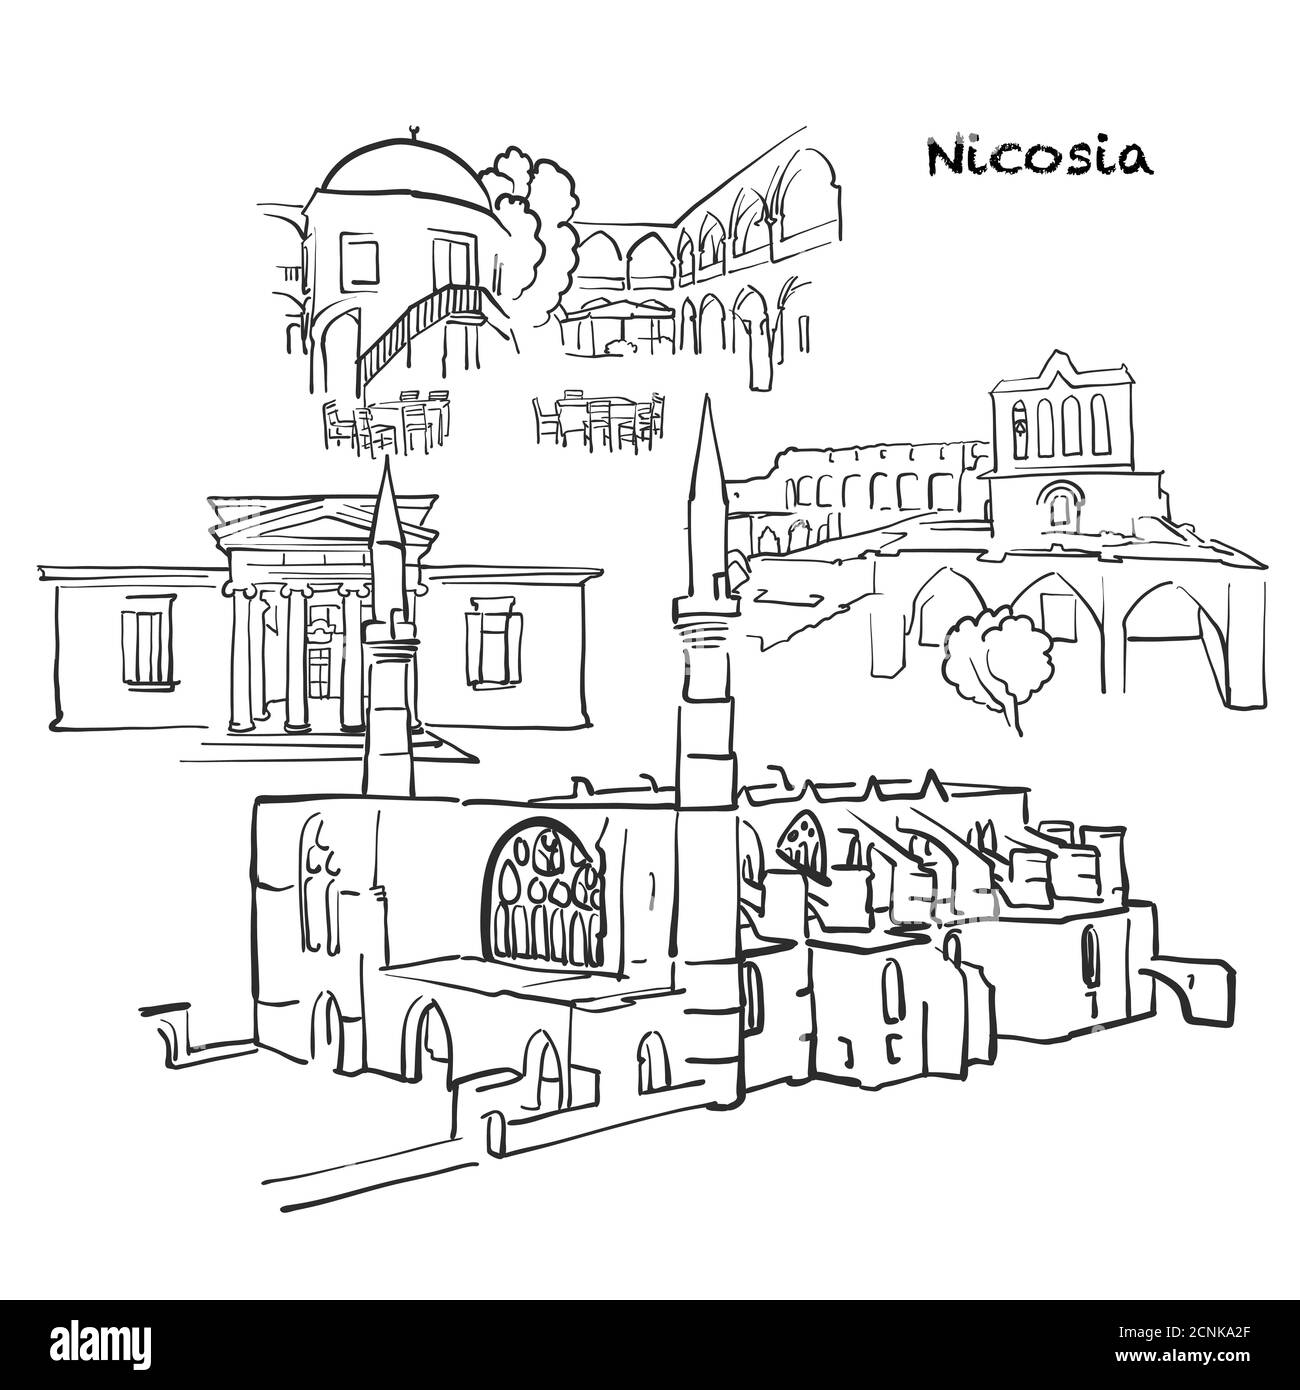 Edifici famosi di Nicosia, composizione di Cipro. Illustrazione vettoriale in bianco e nero disegnata a mano. Oggetti raggruppati e mobili. Illustrazione Vettoriale